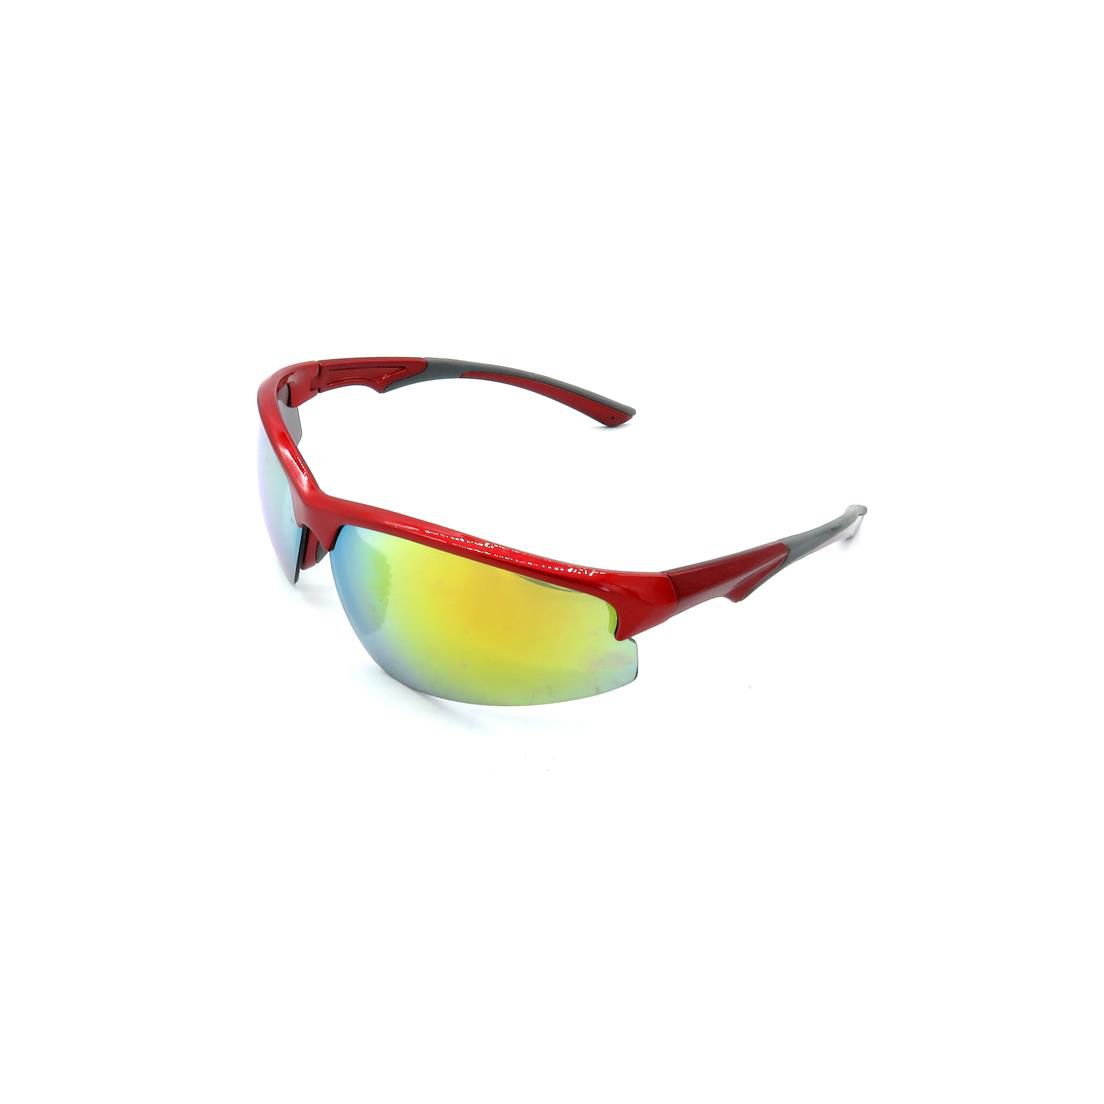 Óculos de Sol Prorider Vermelho e Cinza com Lente Espelhada Colorida -  B88-9005 - Muze Shop